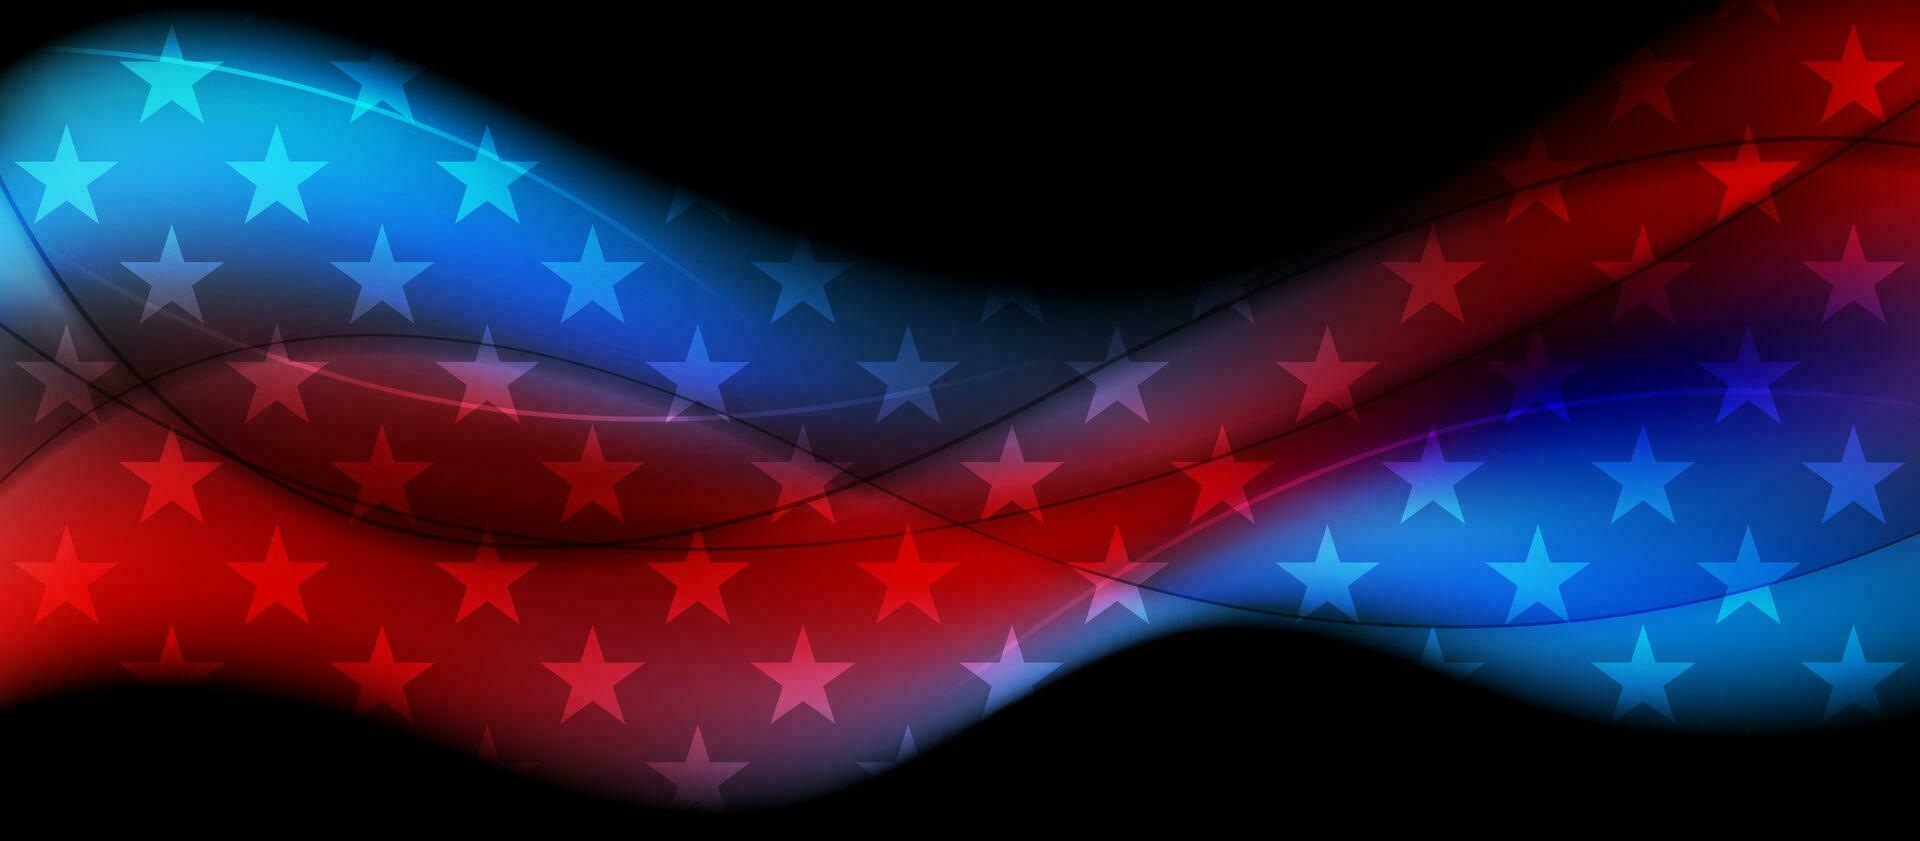 EUA bandeira cores e estrelas abstrato ondulado americano fundo vetor